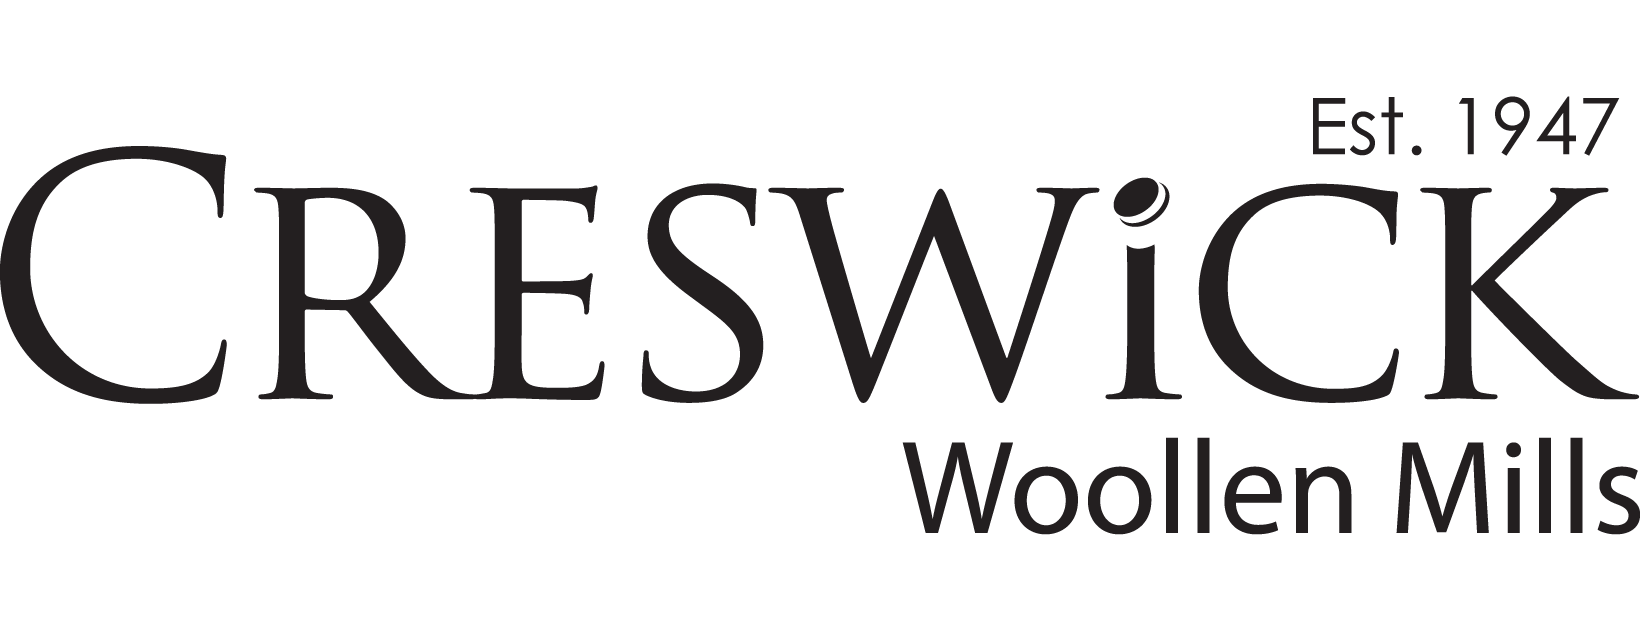 Creswick Woollen Mills logo